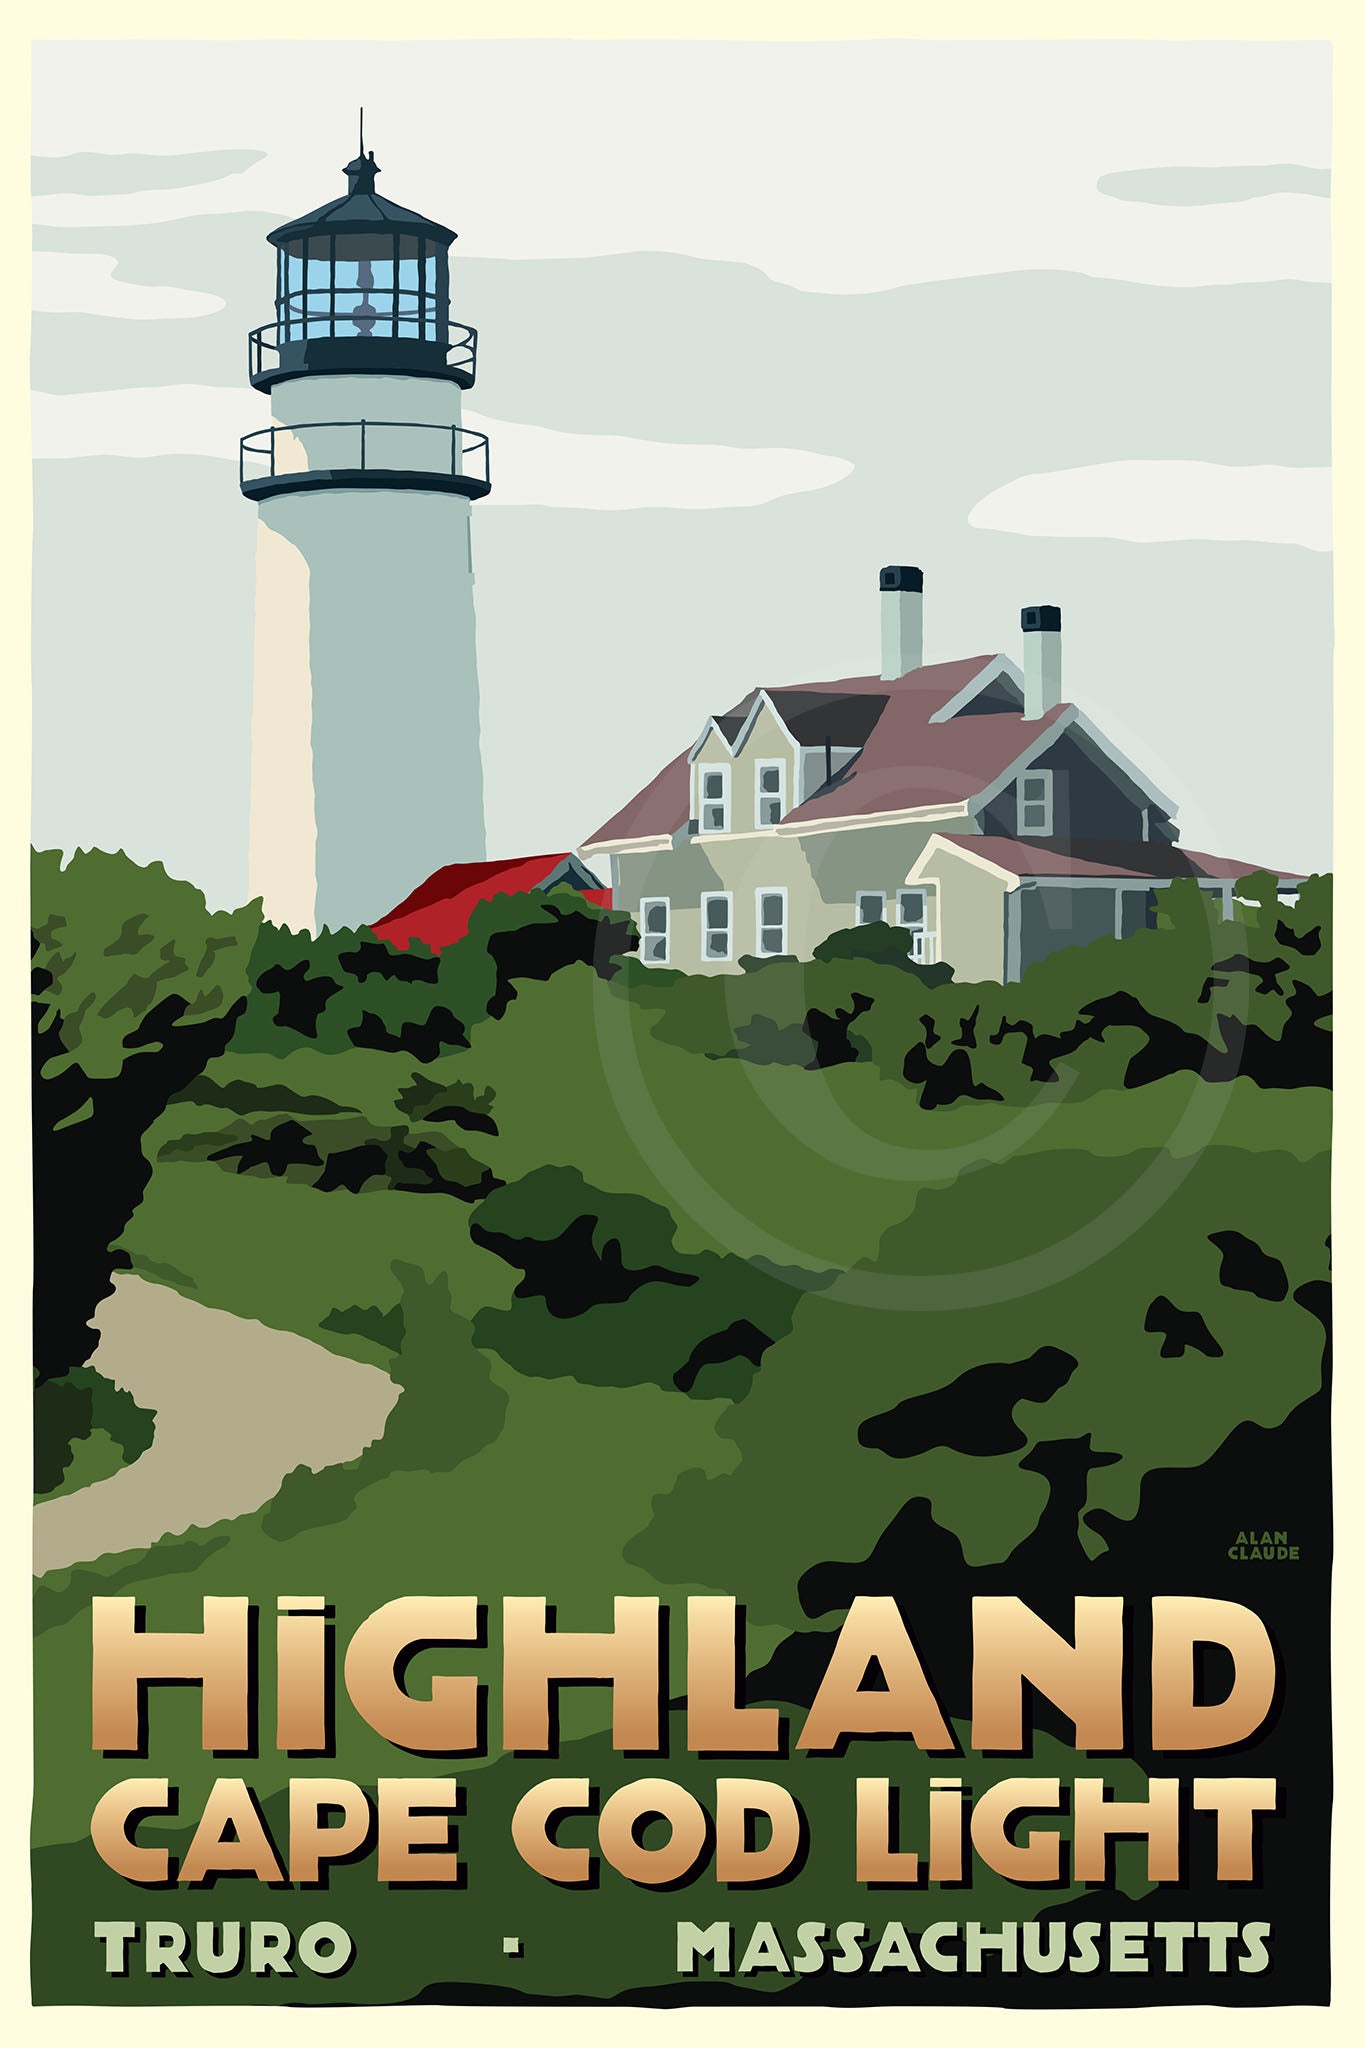 Highland Light Art Print 36" x 53" Travel Poster By Alan Claude - Massachusetts